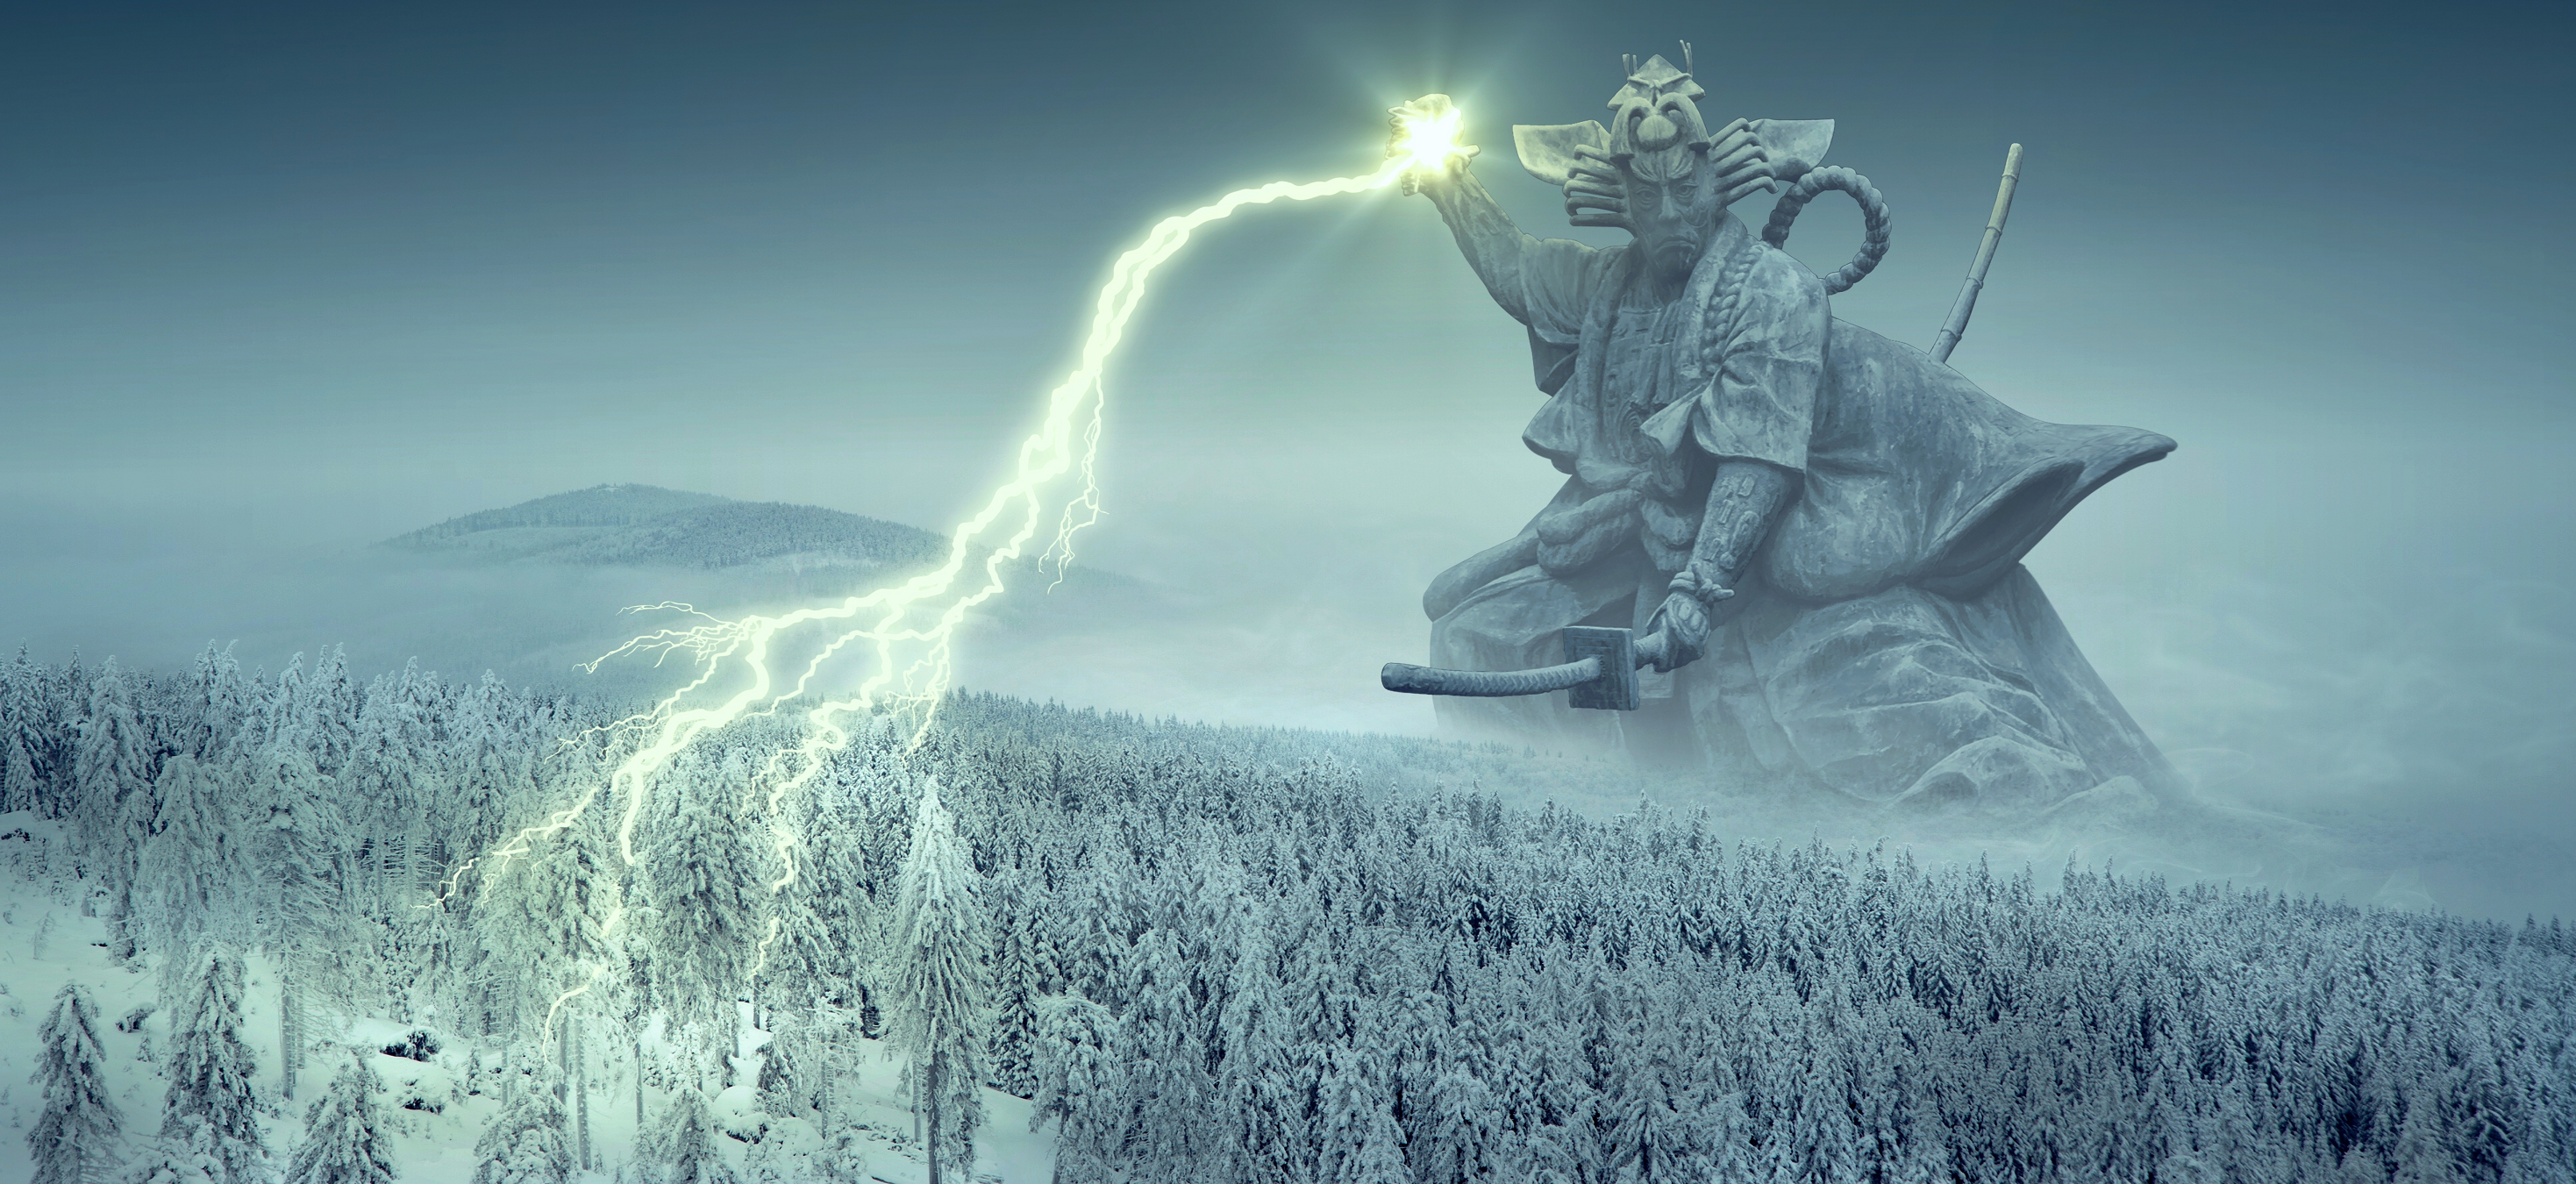 Forest Giant Lightning Samurai Warrior Winter 2937x1350